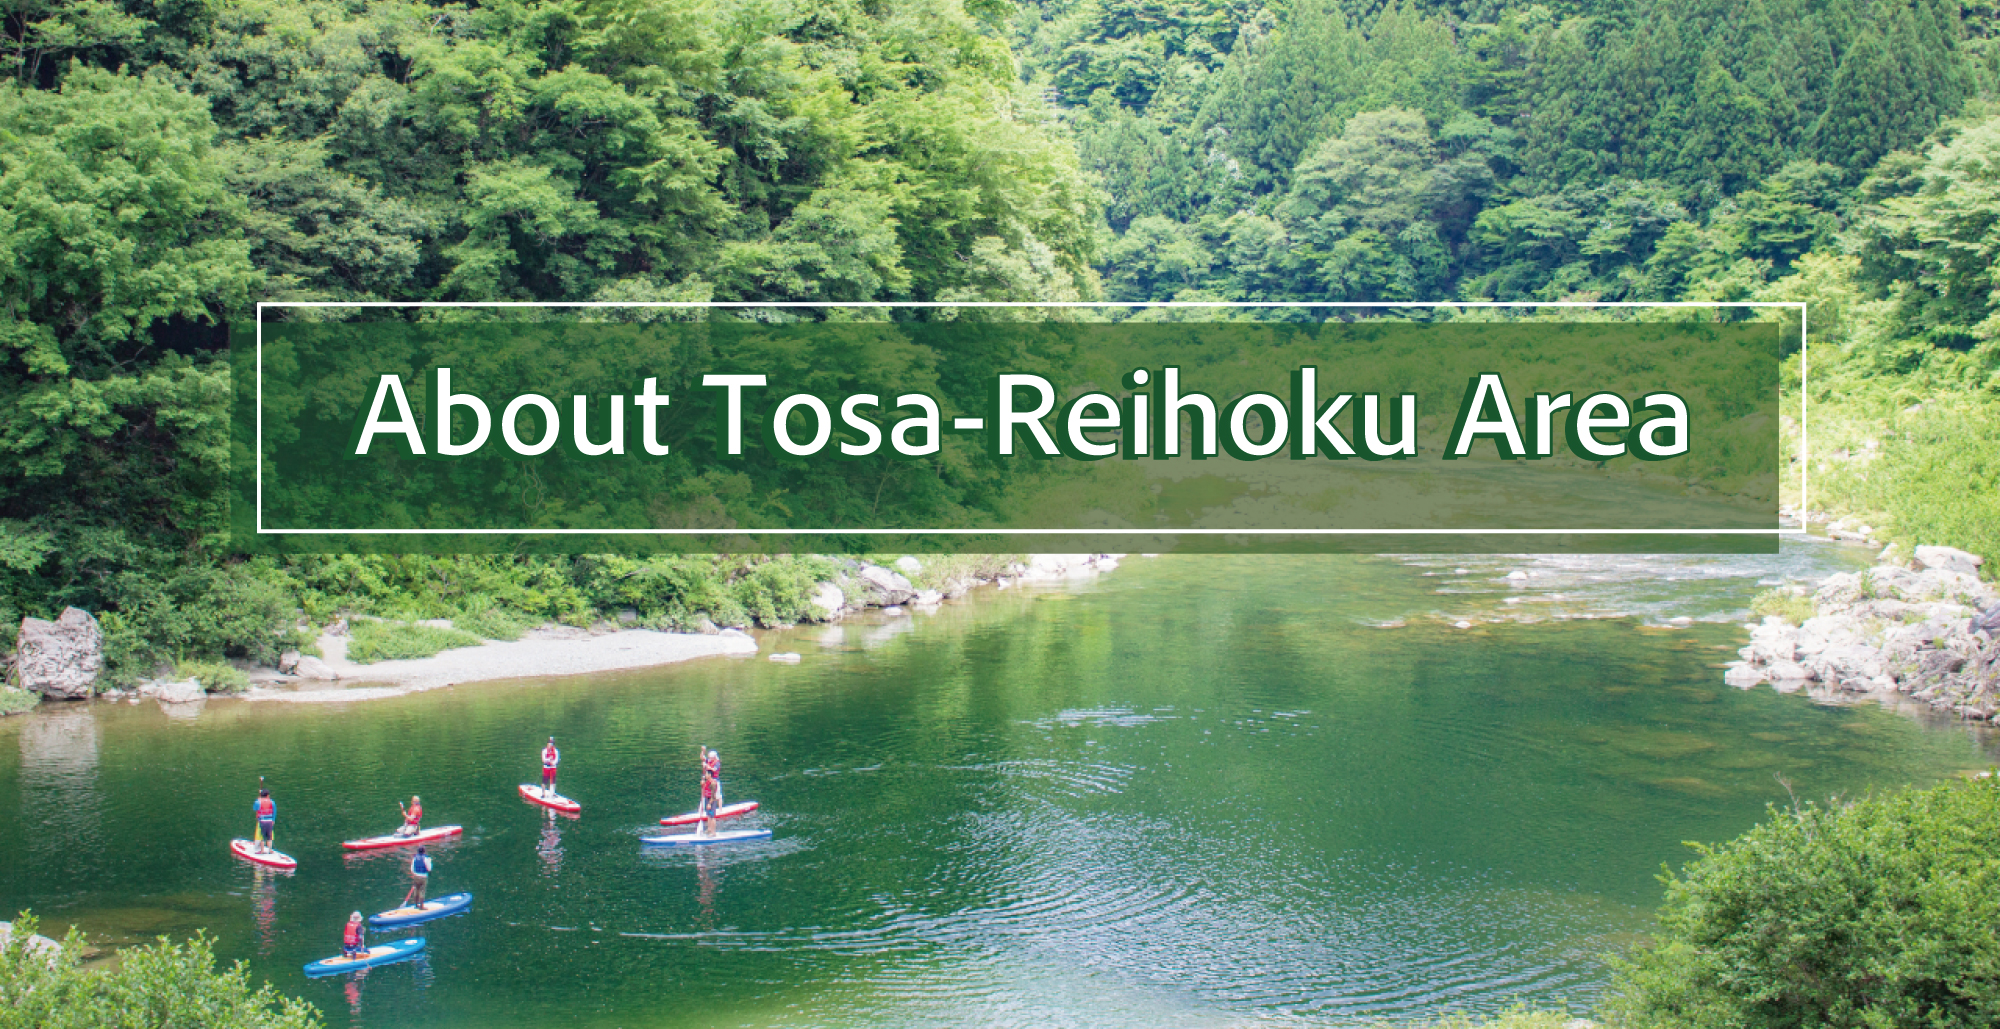 About Tosa-Reihoku Area